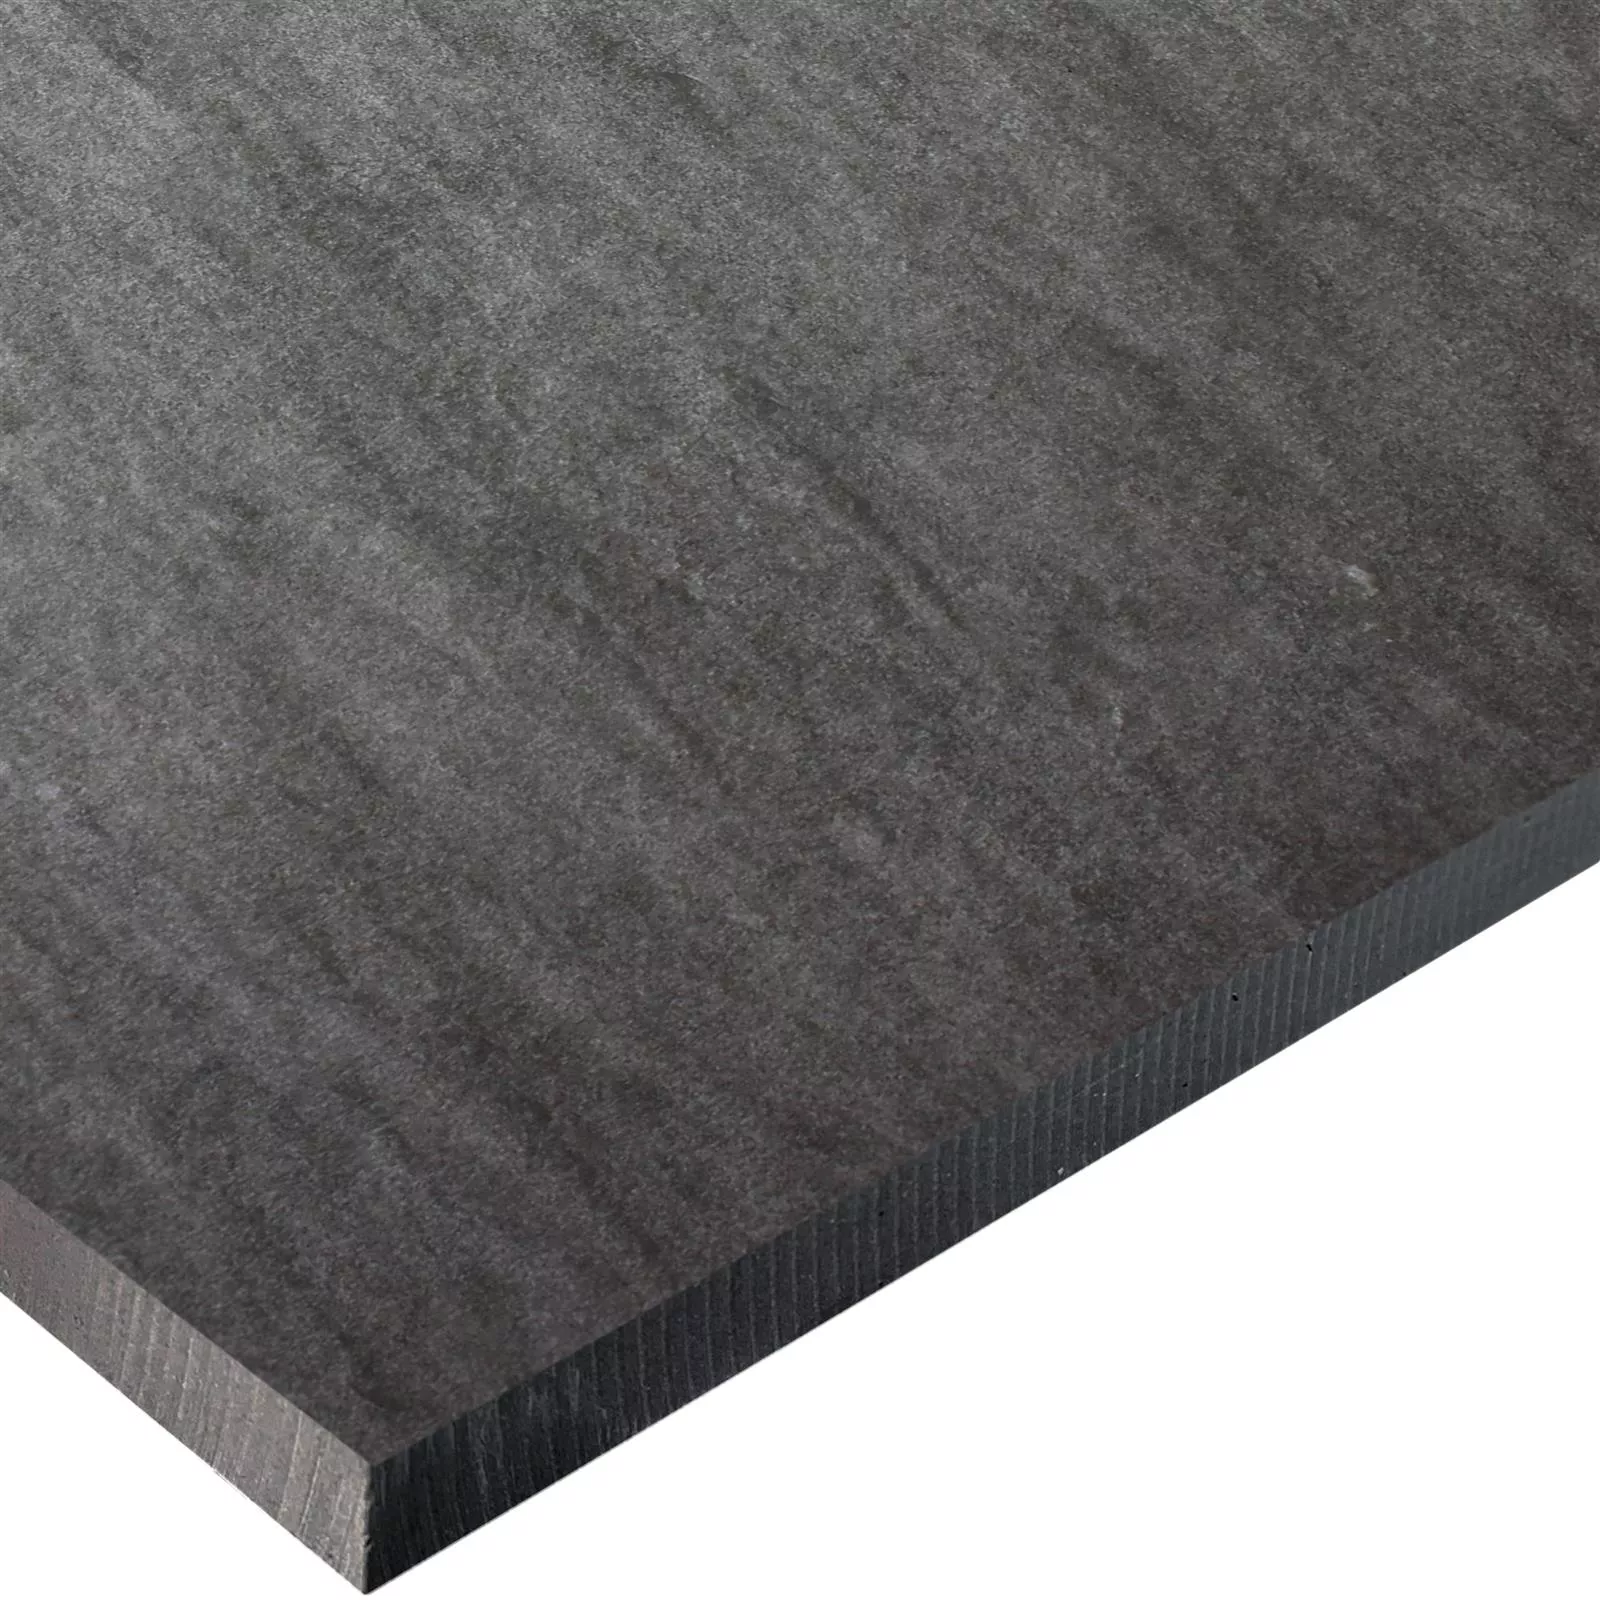 Terrassenplatten Dallas Quarzitoptik Rektifiziert 45x90x2cm Anthrazit